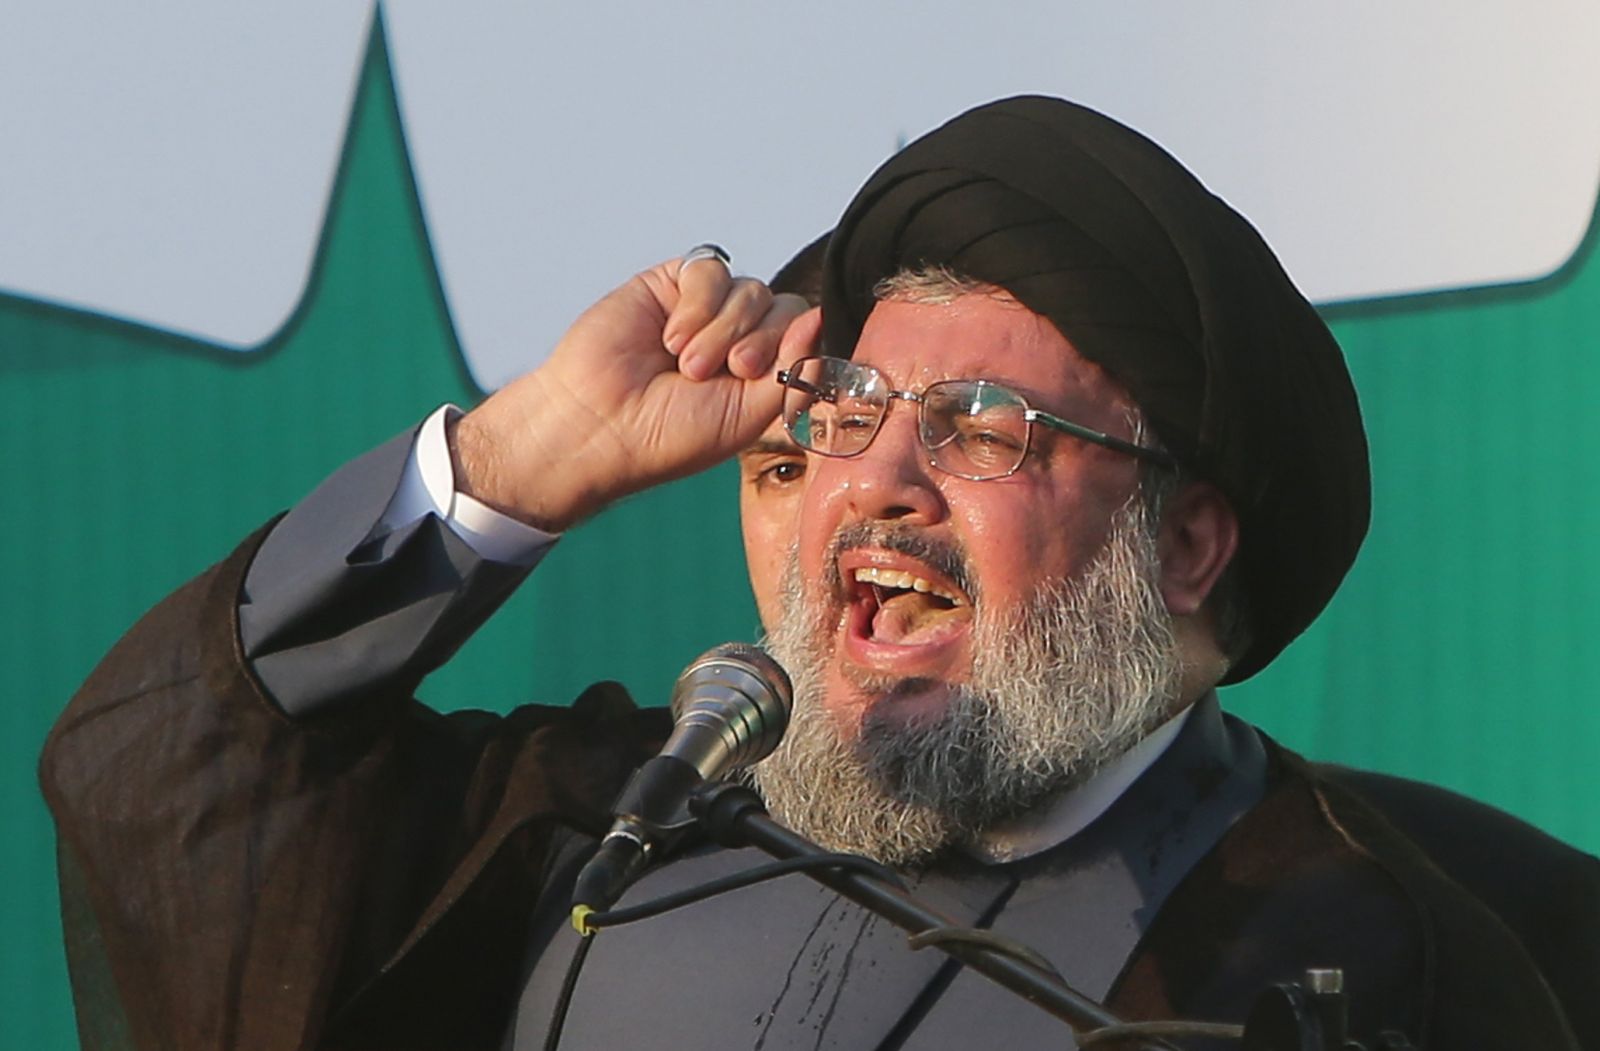 الديلي بيست: أمريكا تنسّق مع "حزب الله" للقتال في سوريا